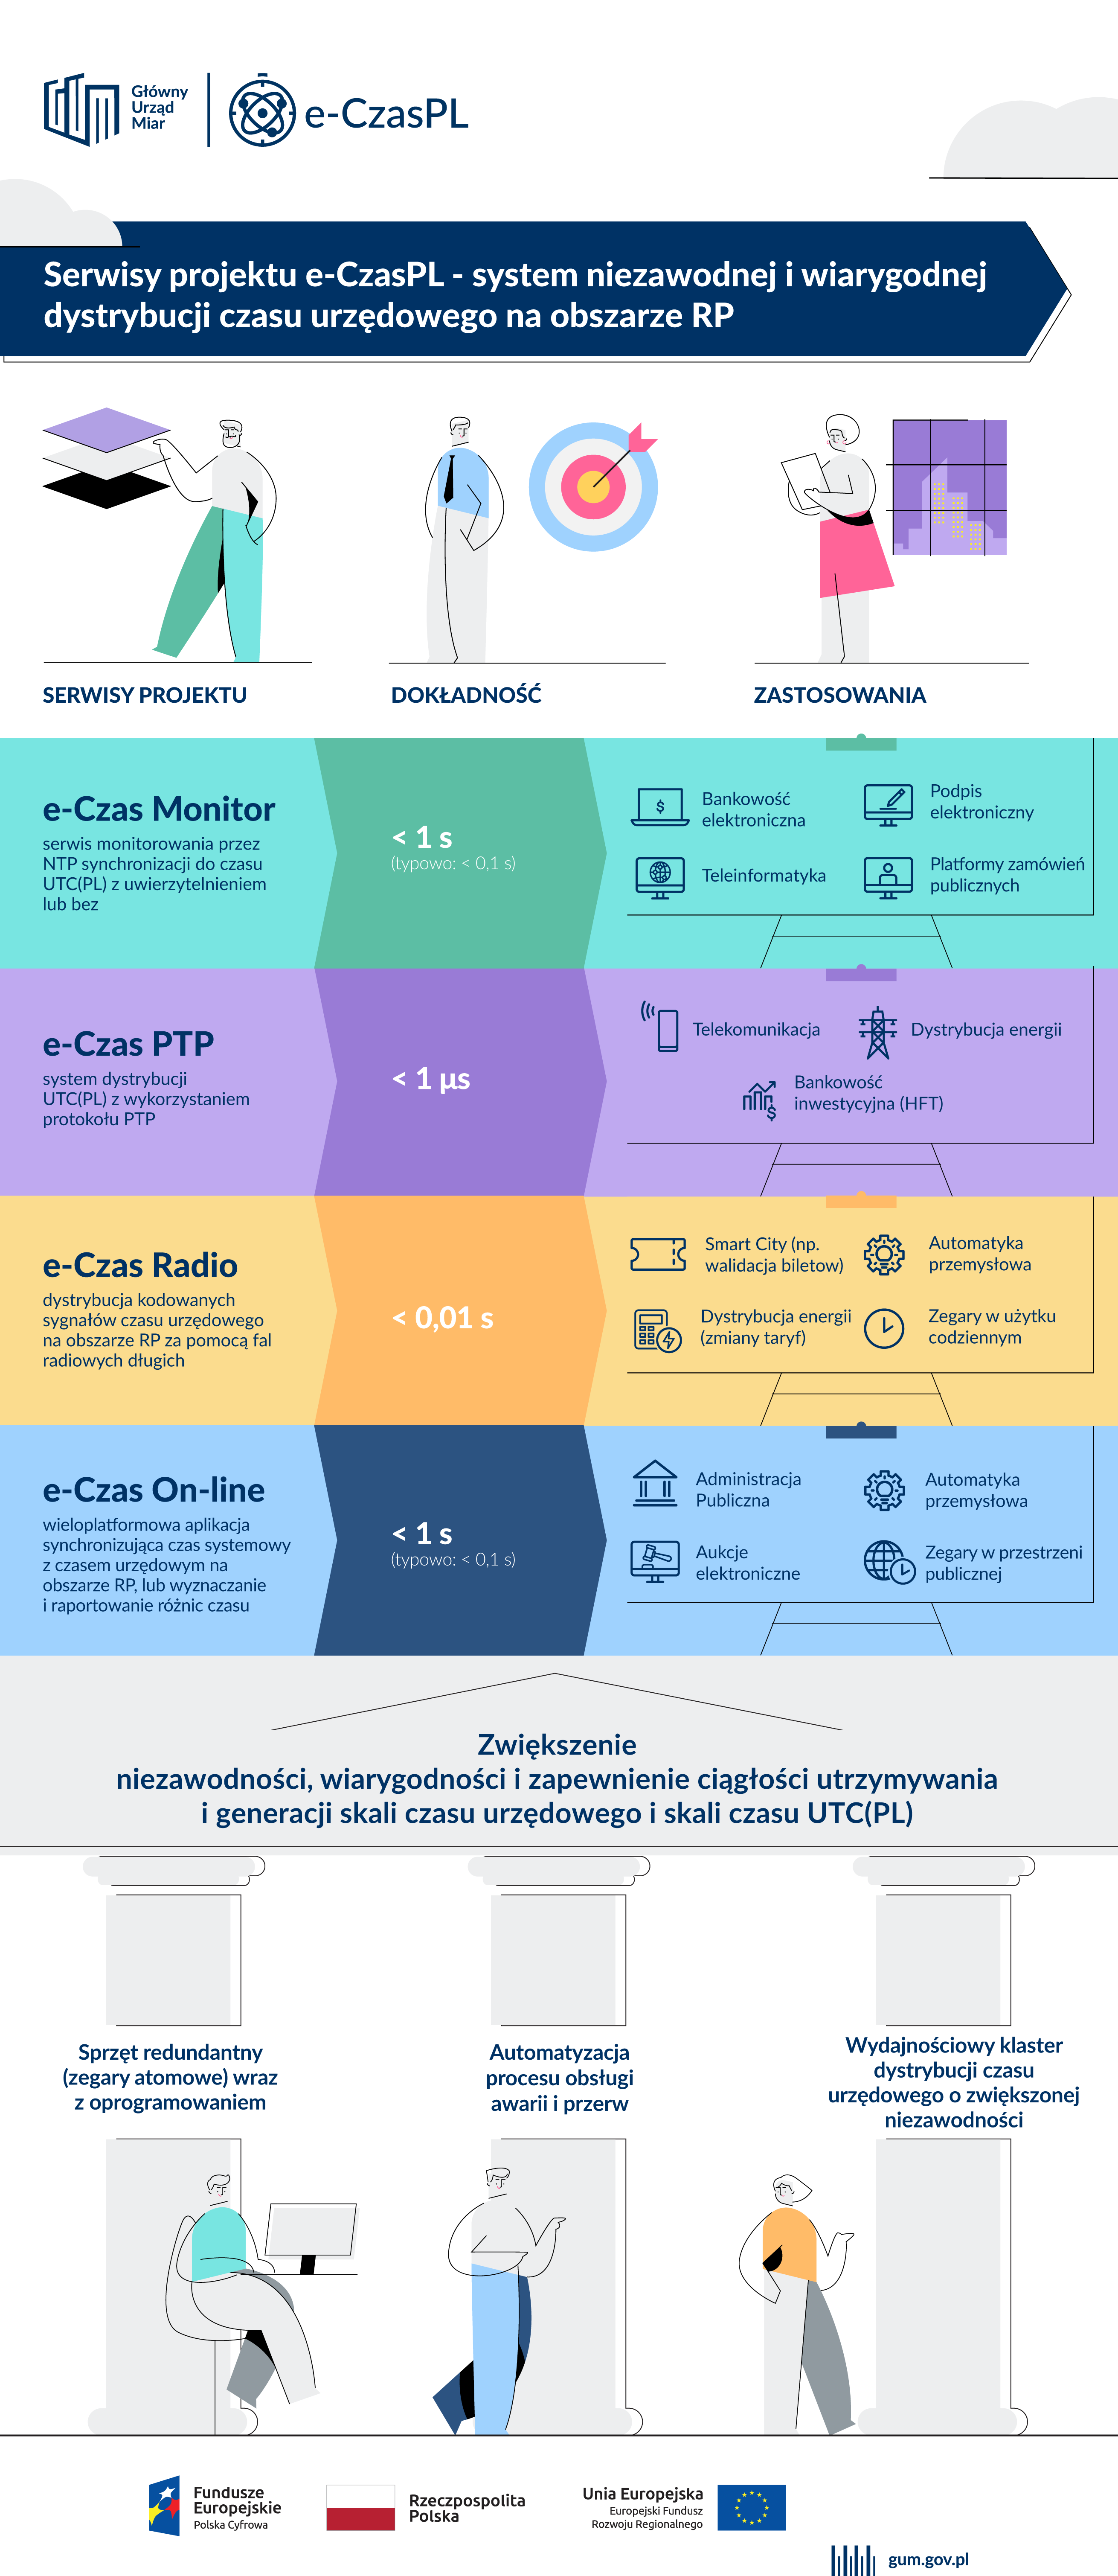 Rozbudowana, różnokolorowa infografika opisująca podstawowe funkcjonalności e-usługi publicznej uruchamianej w ramach projektu e-CzasPL.